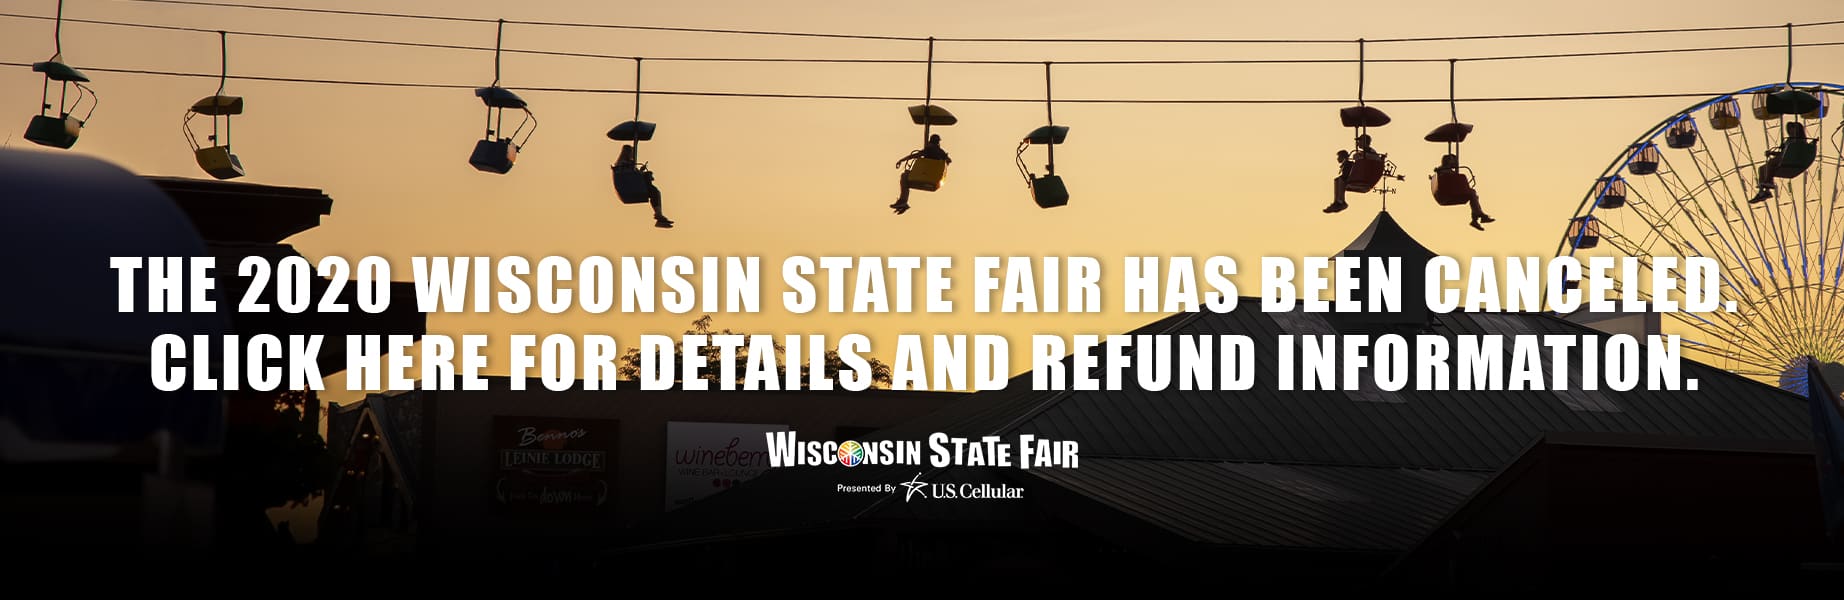 2020 Wisconsin State Fair – Wisconsin State Fair